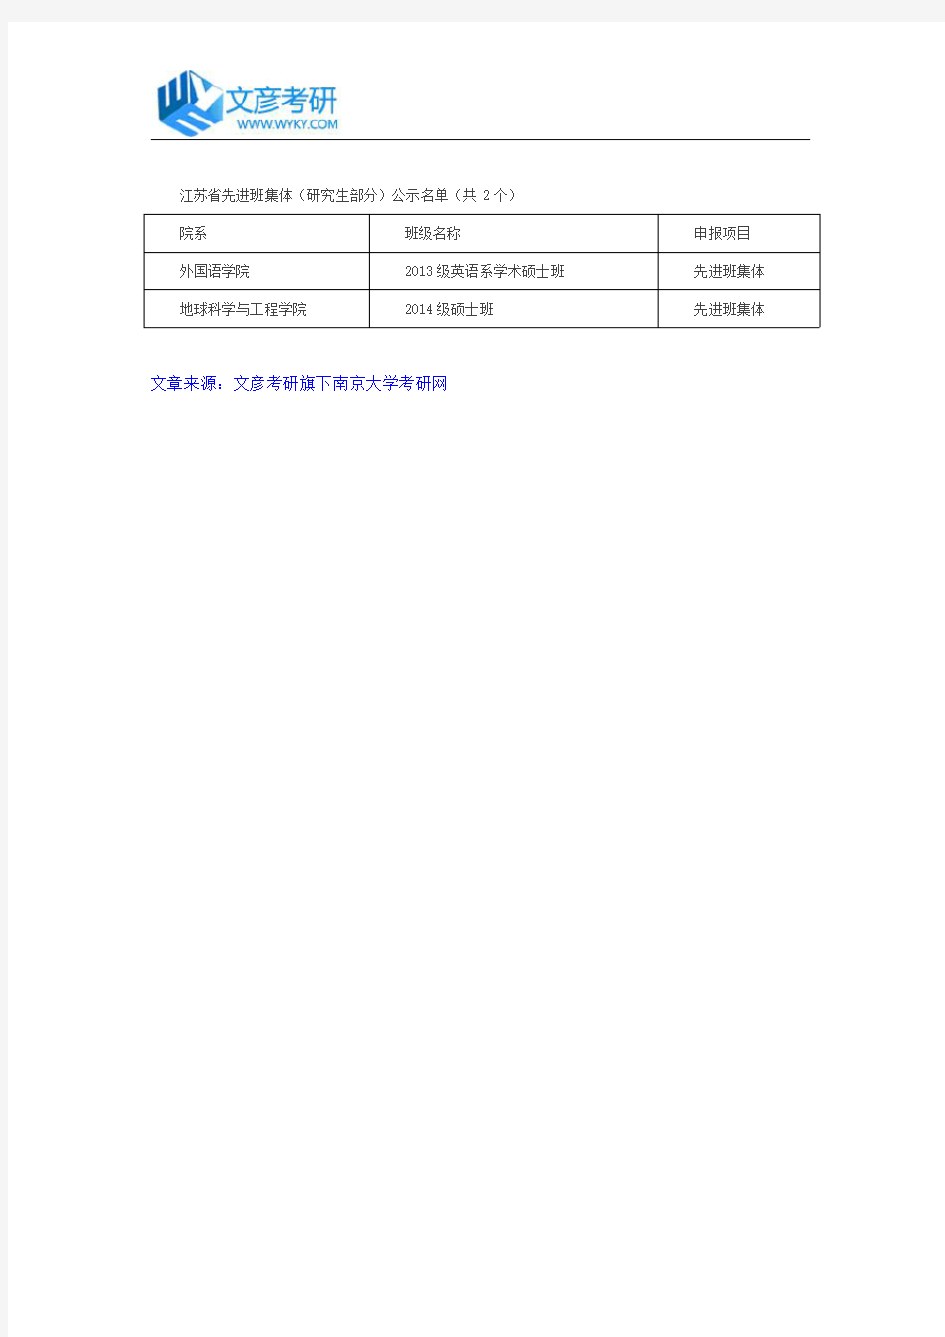 南京大学2016江苏省三好学生、优秀学生干部(研究生部分)公示名单